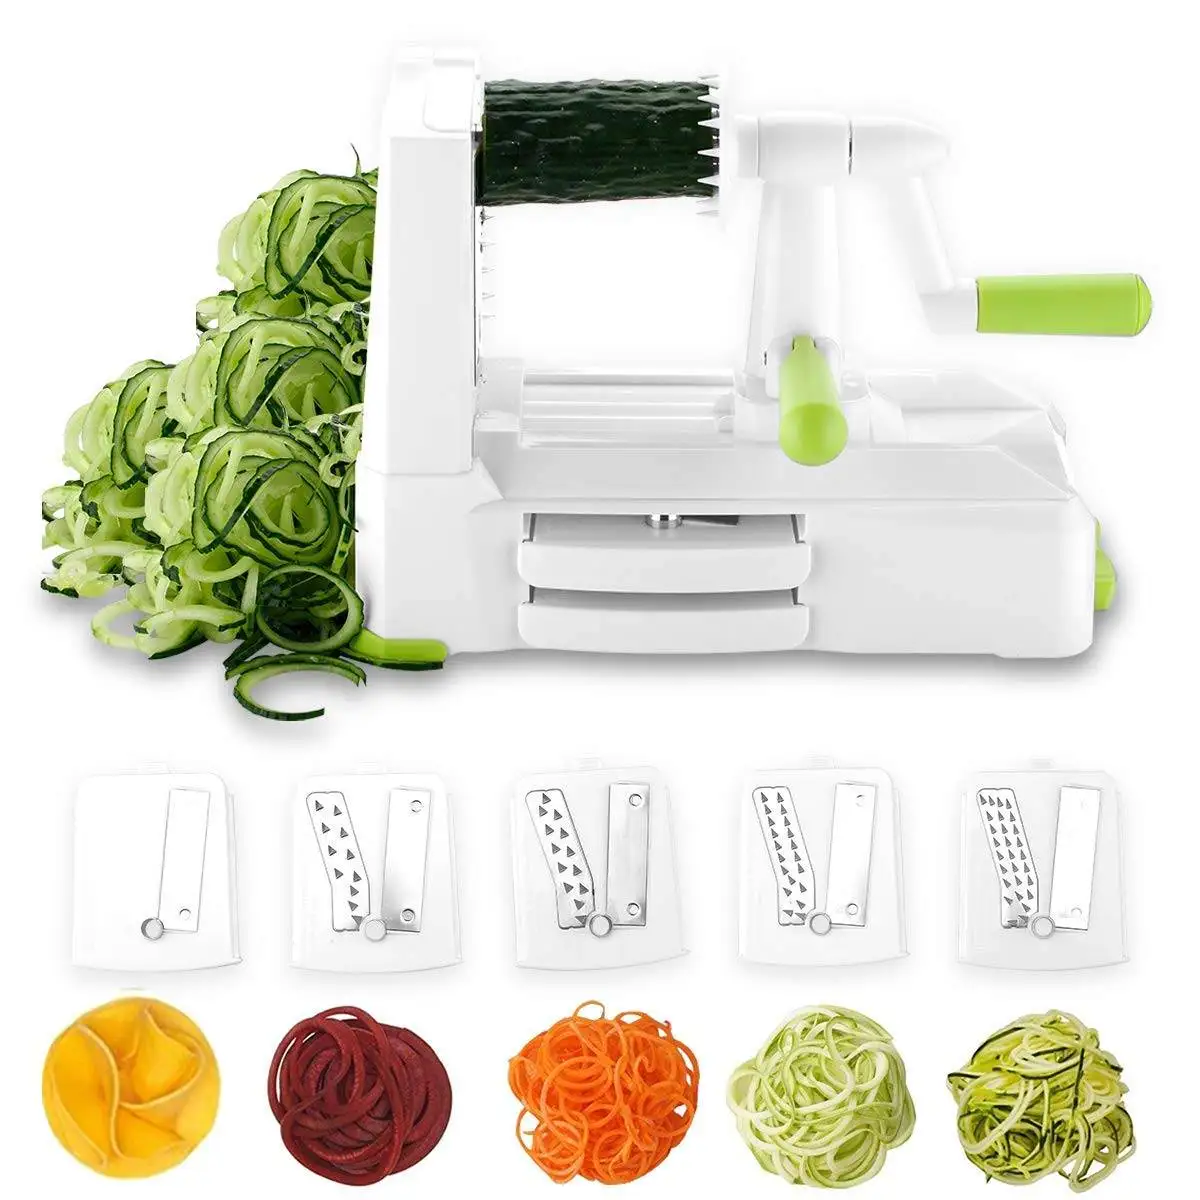 

"" Spiralizer 5-Blade Vegetable Slicer Spiral Slicer with Heavy Duty Base for Fruits Noodles Vegetables